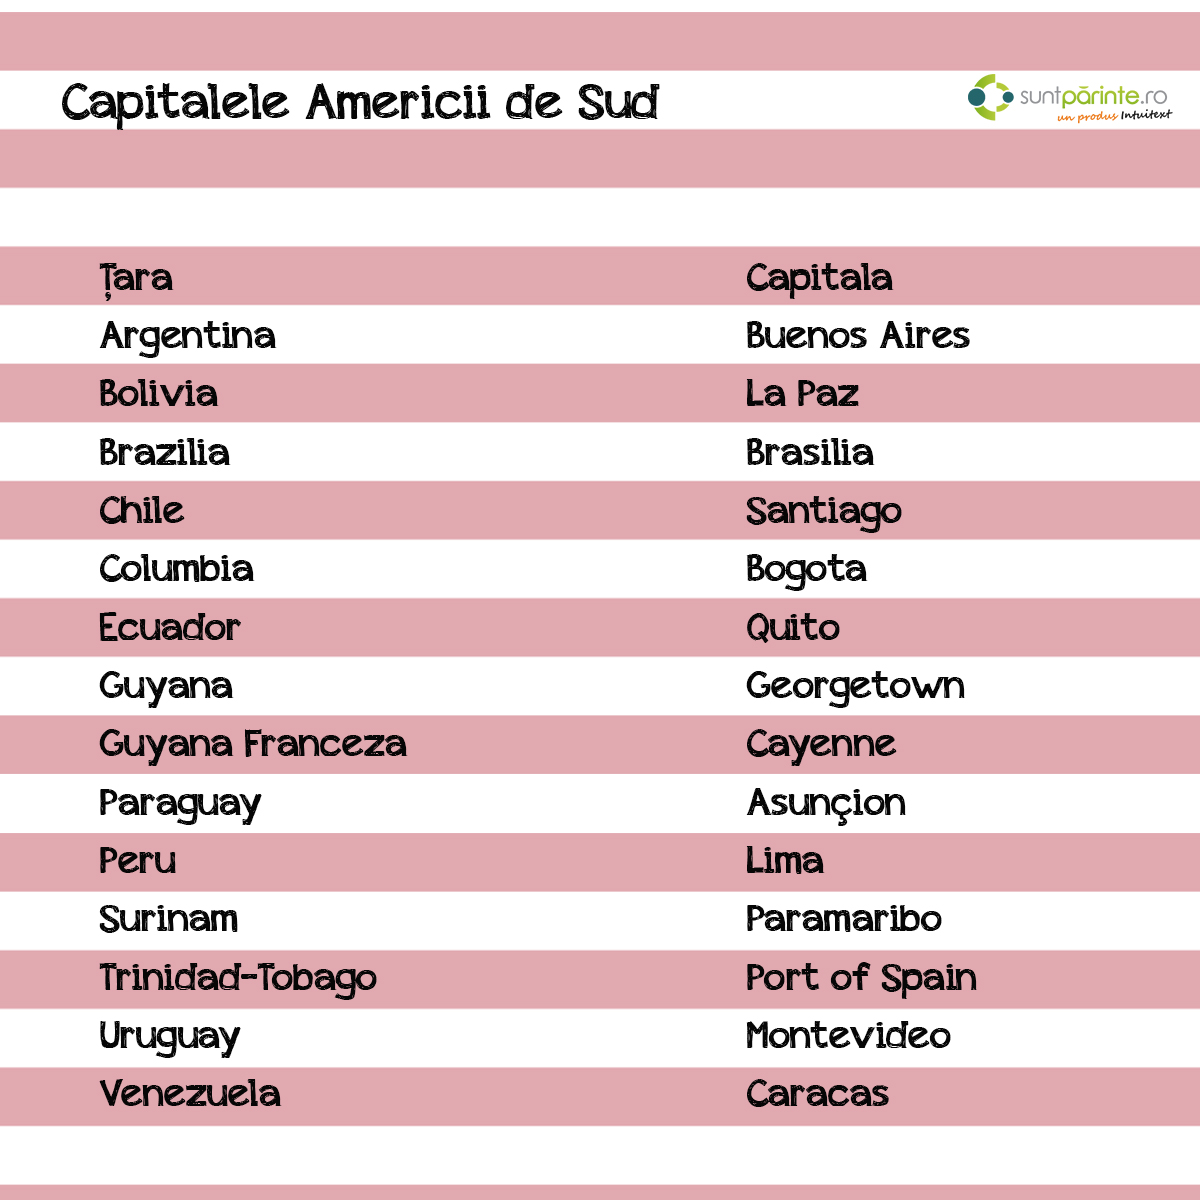 Capitalele Amercii de Sud